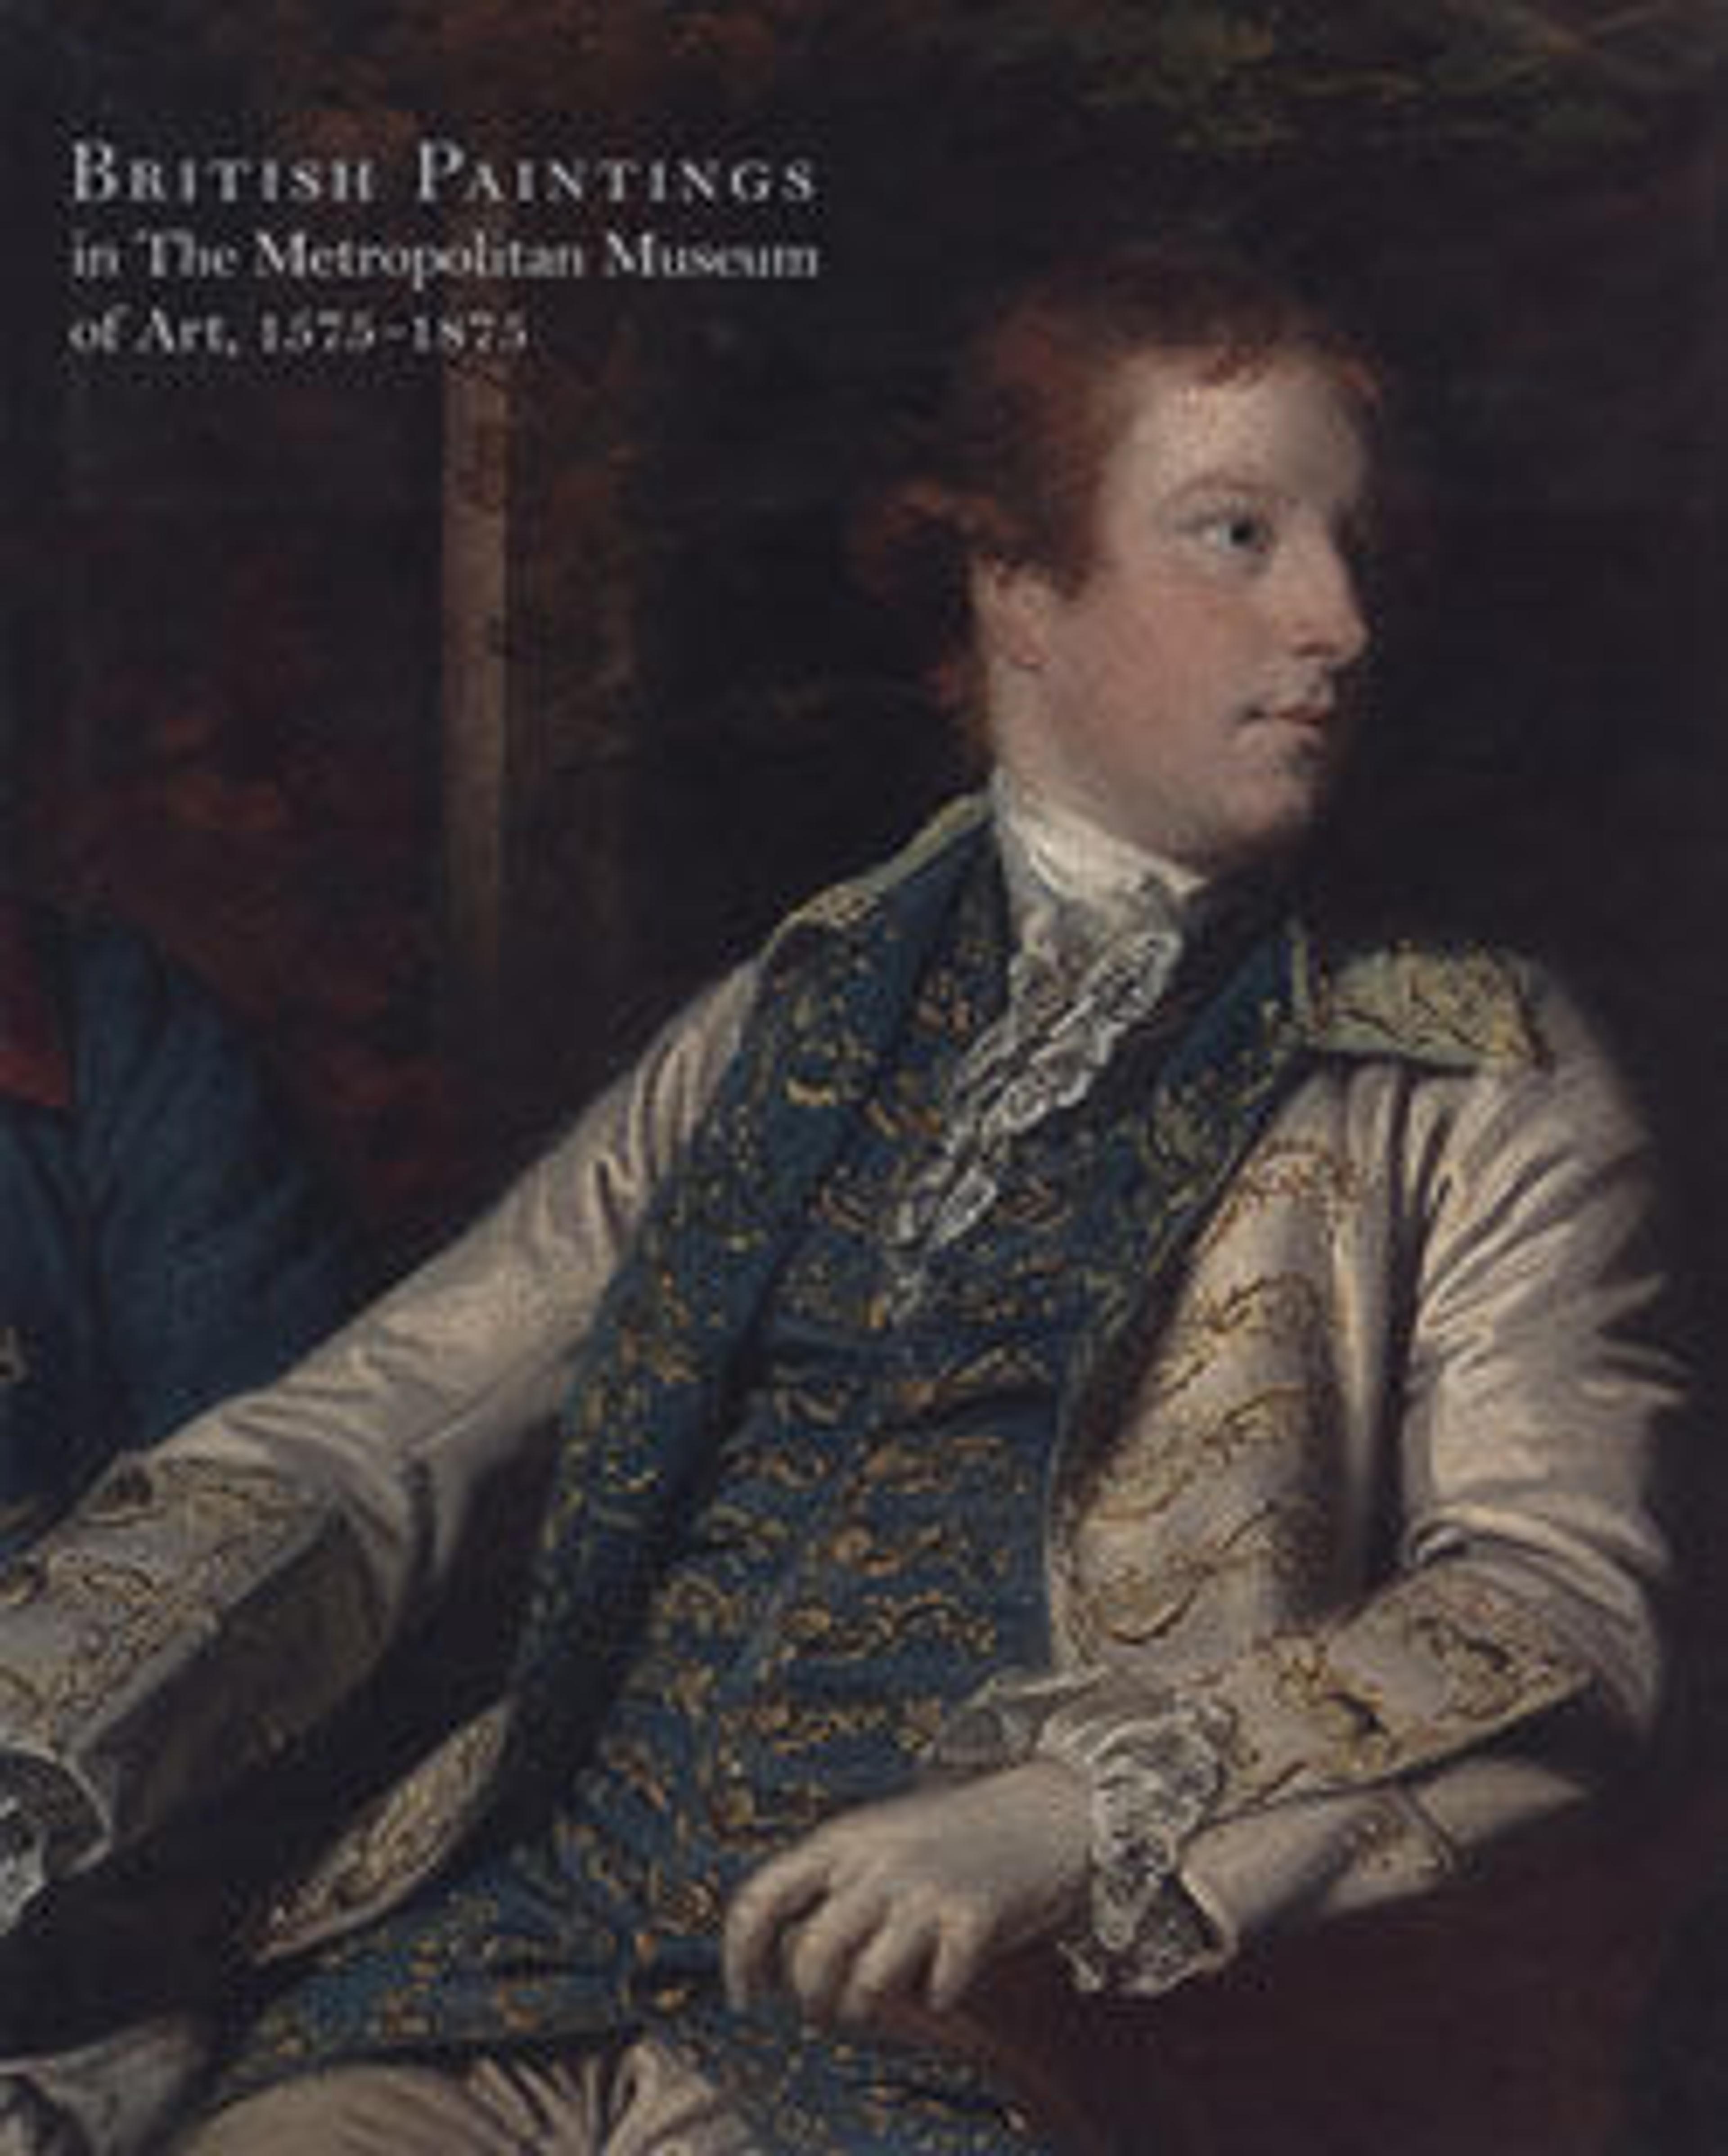 British Paintings in The Metropolitan Museum of Art, 1575-1875